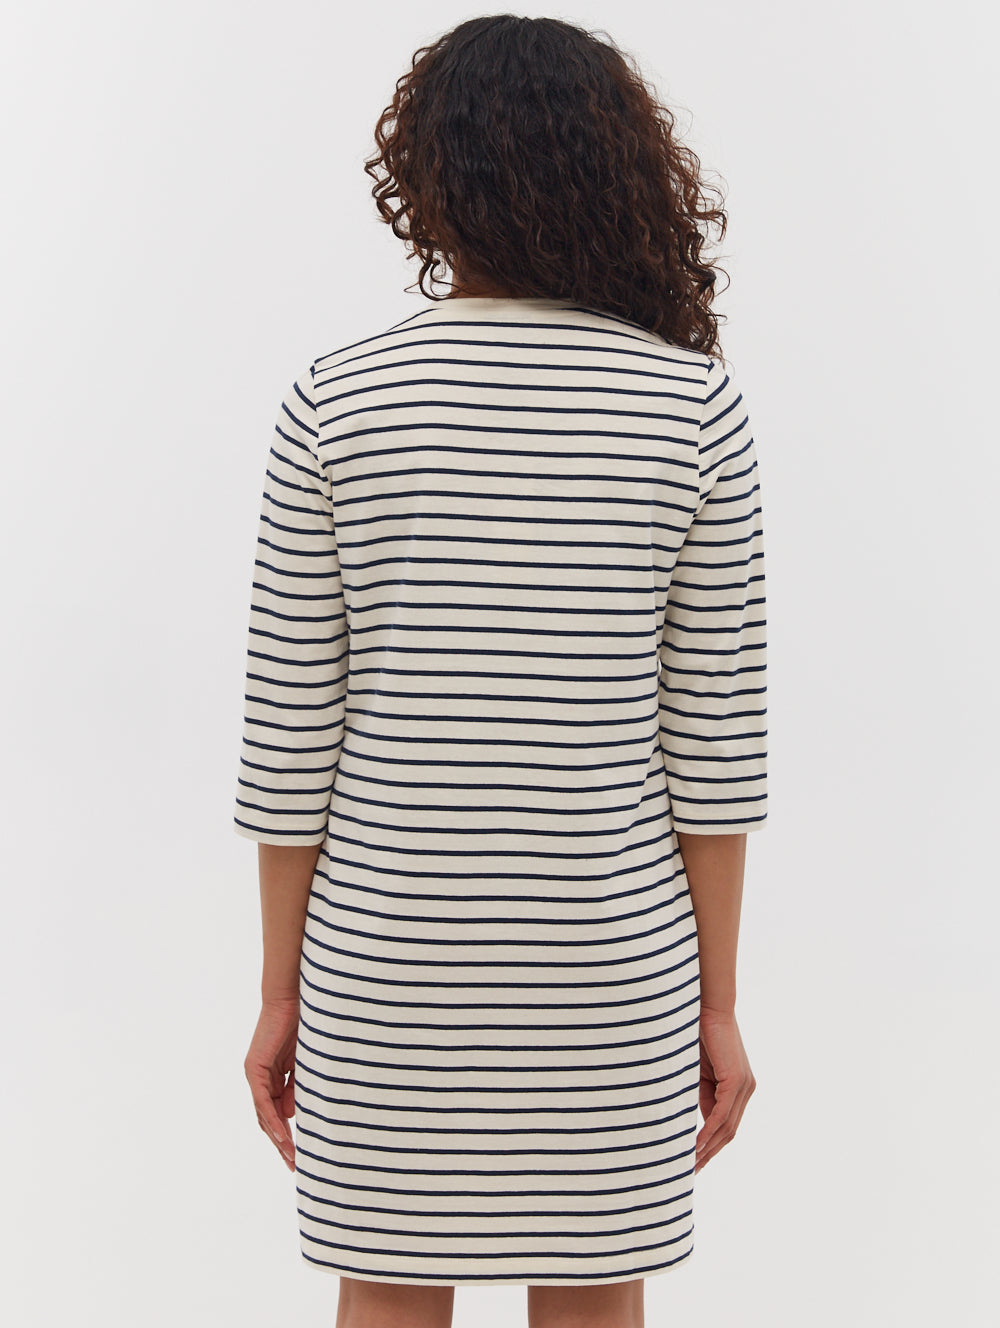 Mab Striped 3/4 Sleeve Dress - BN4N128273